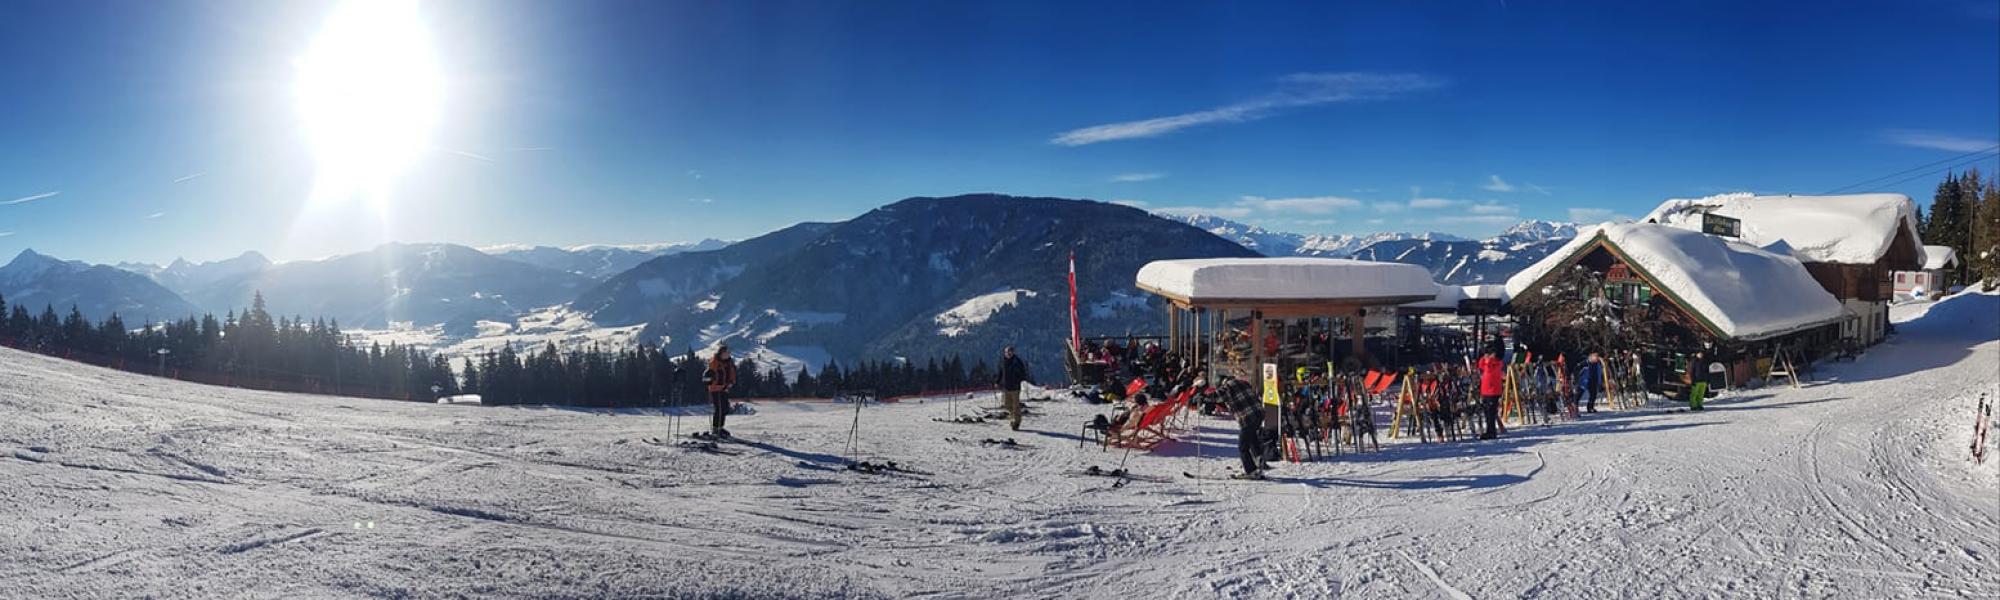 Reitlehenalm im familienfreundlichen Skigebiet Monte Popolo.